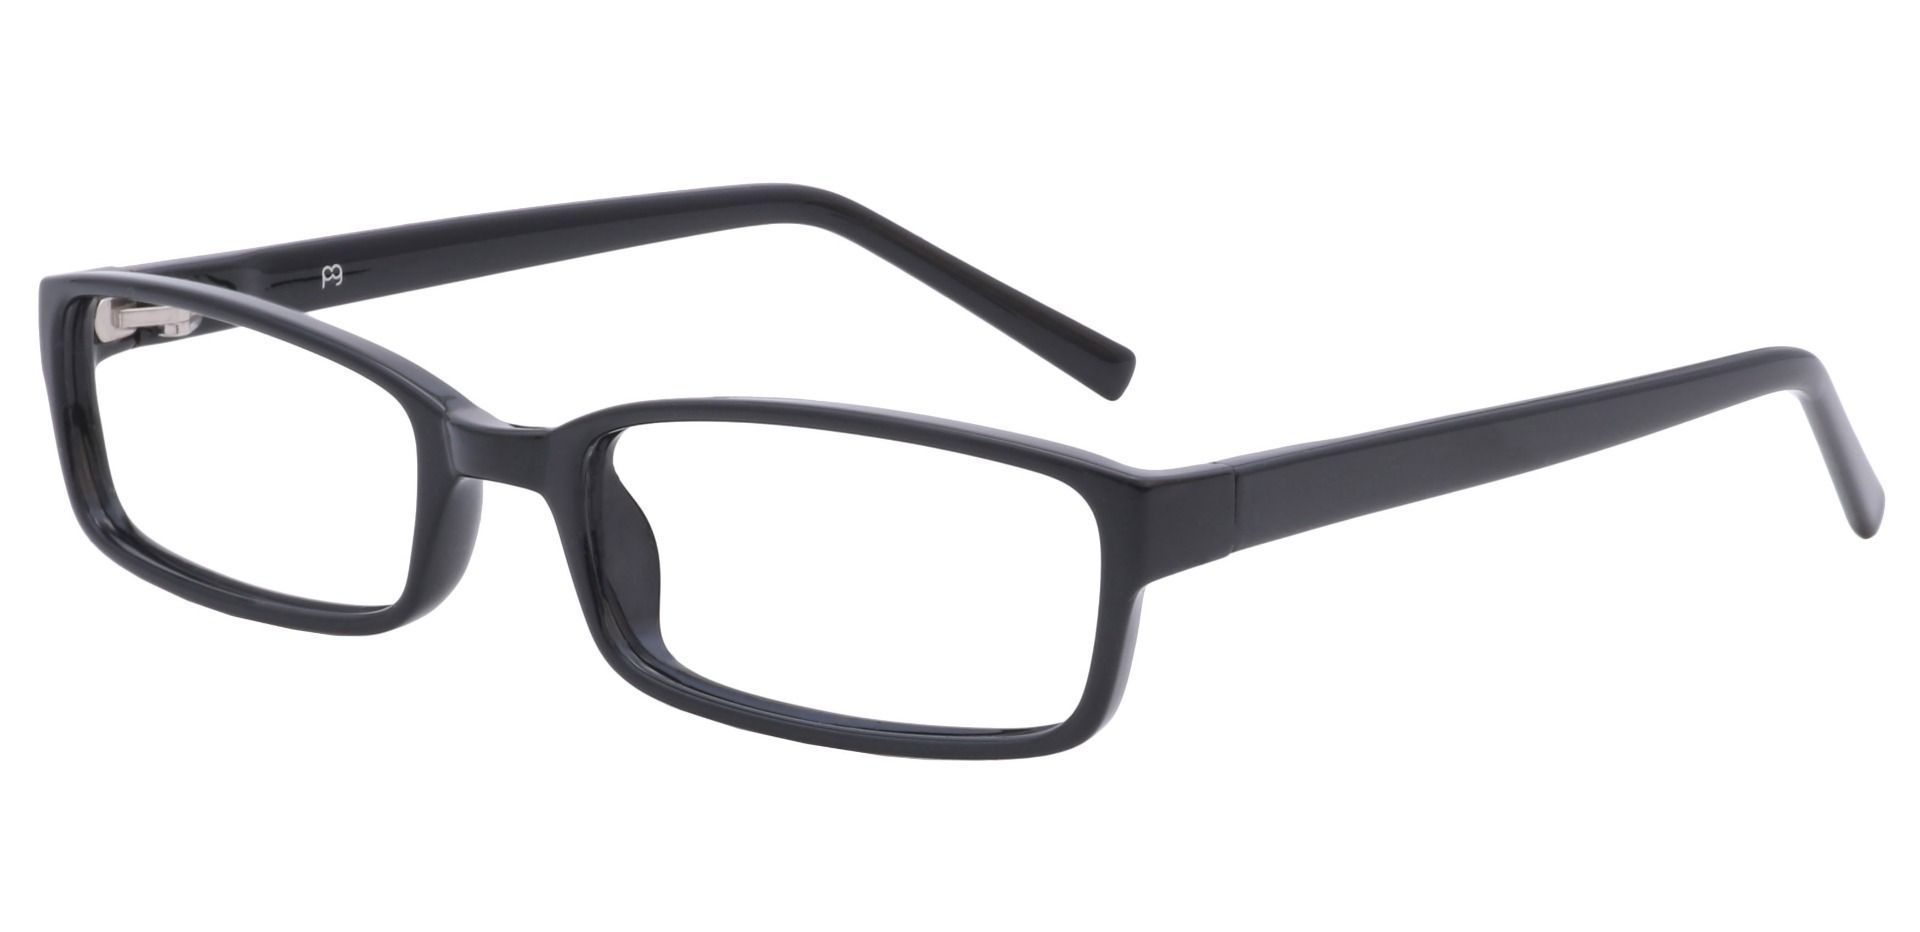 Sanford Rectangle Eyeglasses Frame - Black